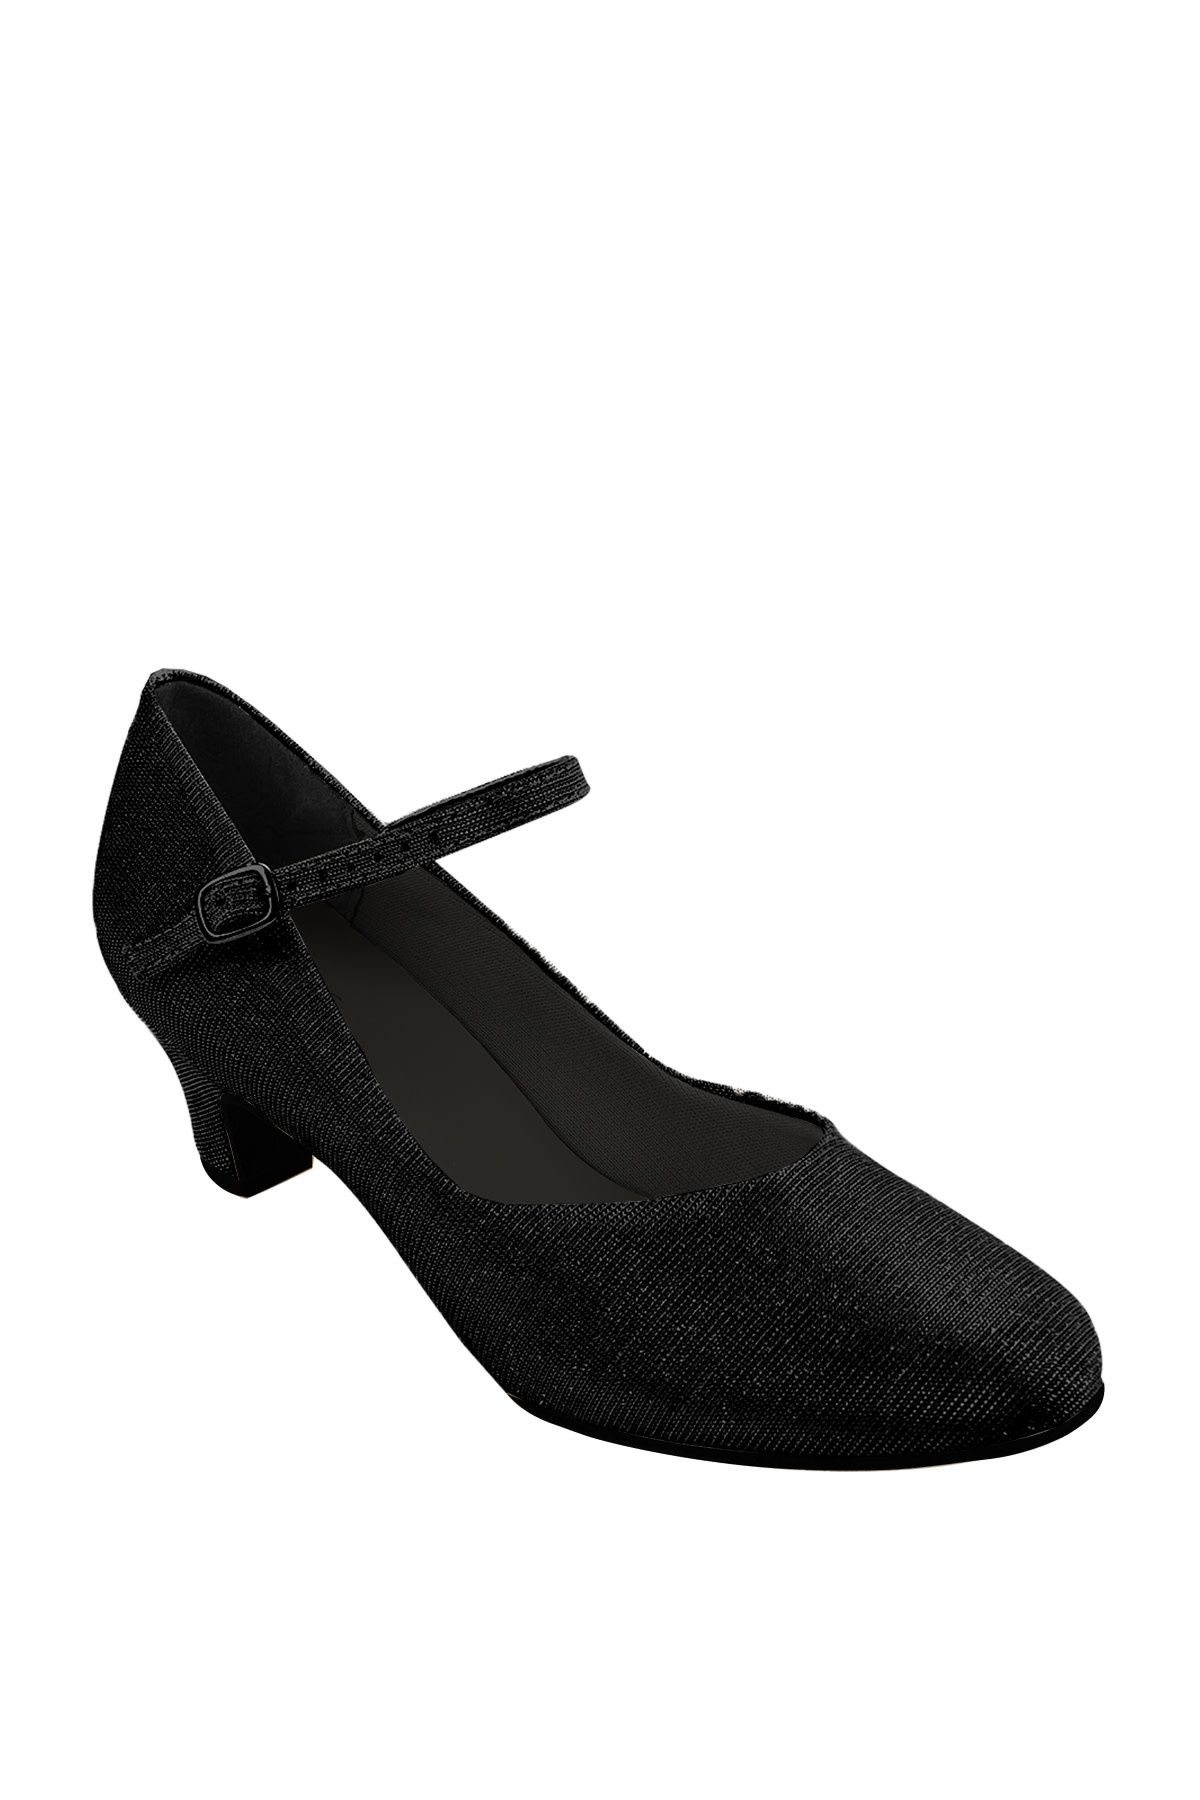 So Danca Ballroom Dance Shoes, So Danca BL-116, 1.5 " Heel